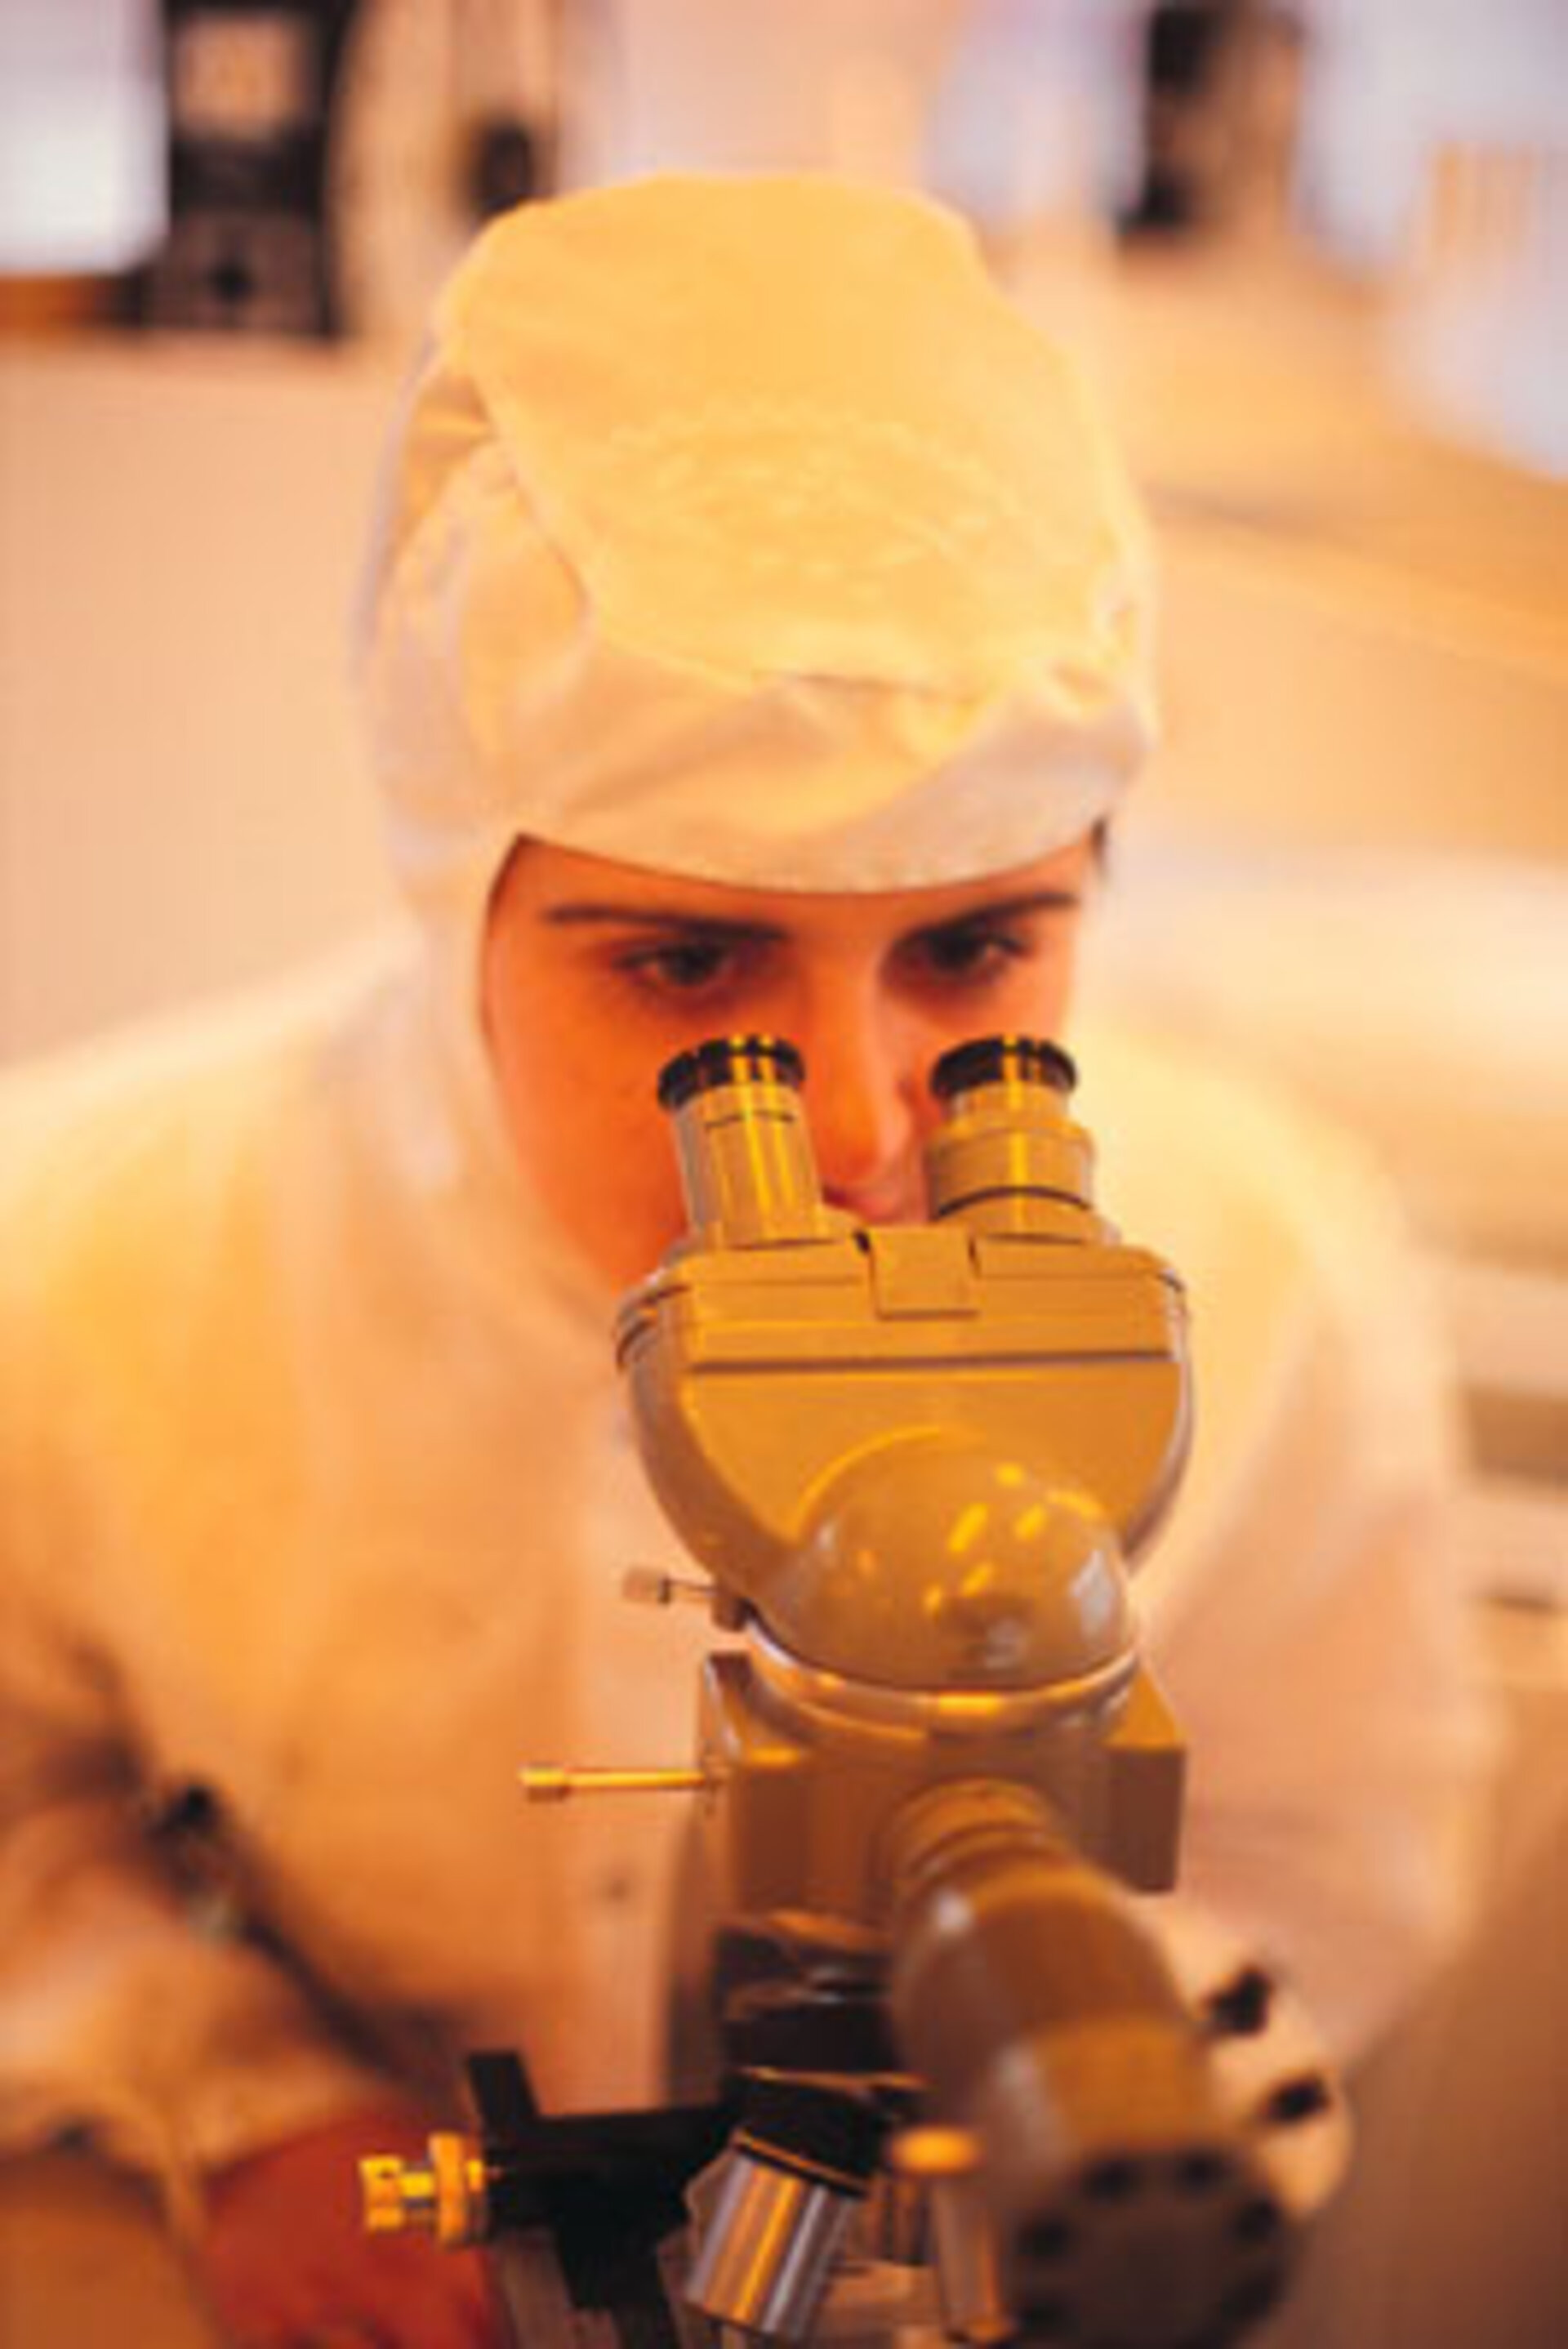 ESA-forskning kan leda till bättre medicinsk utrustning